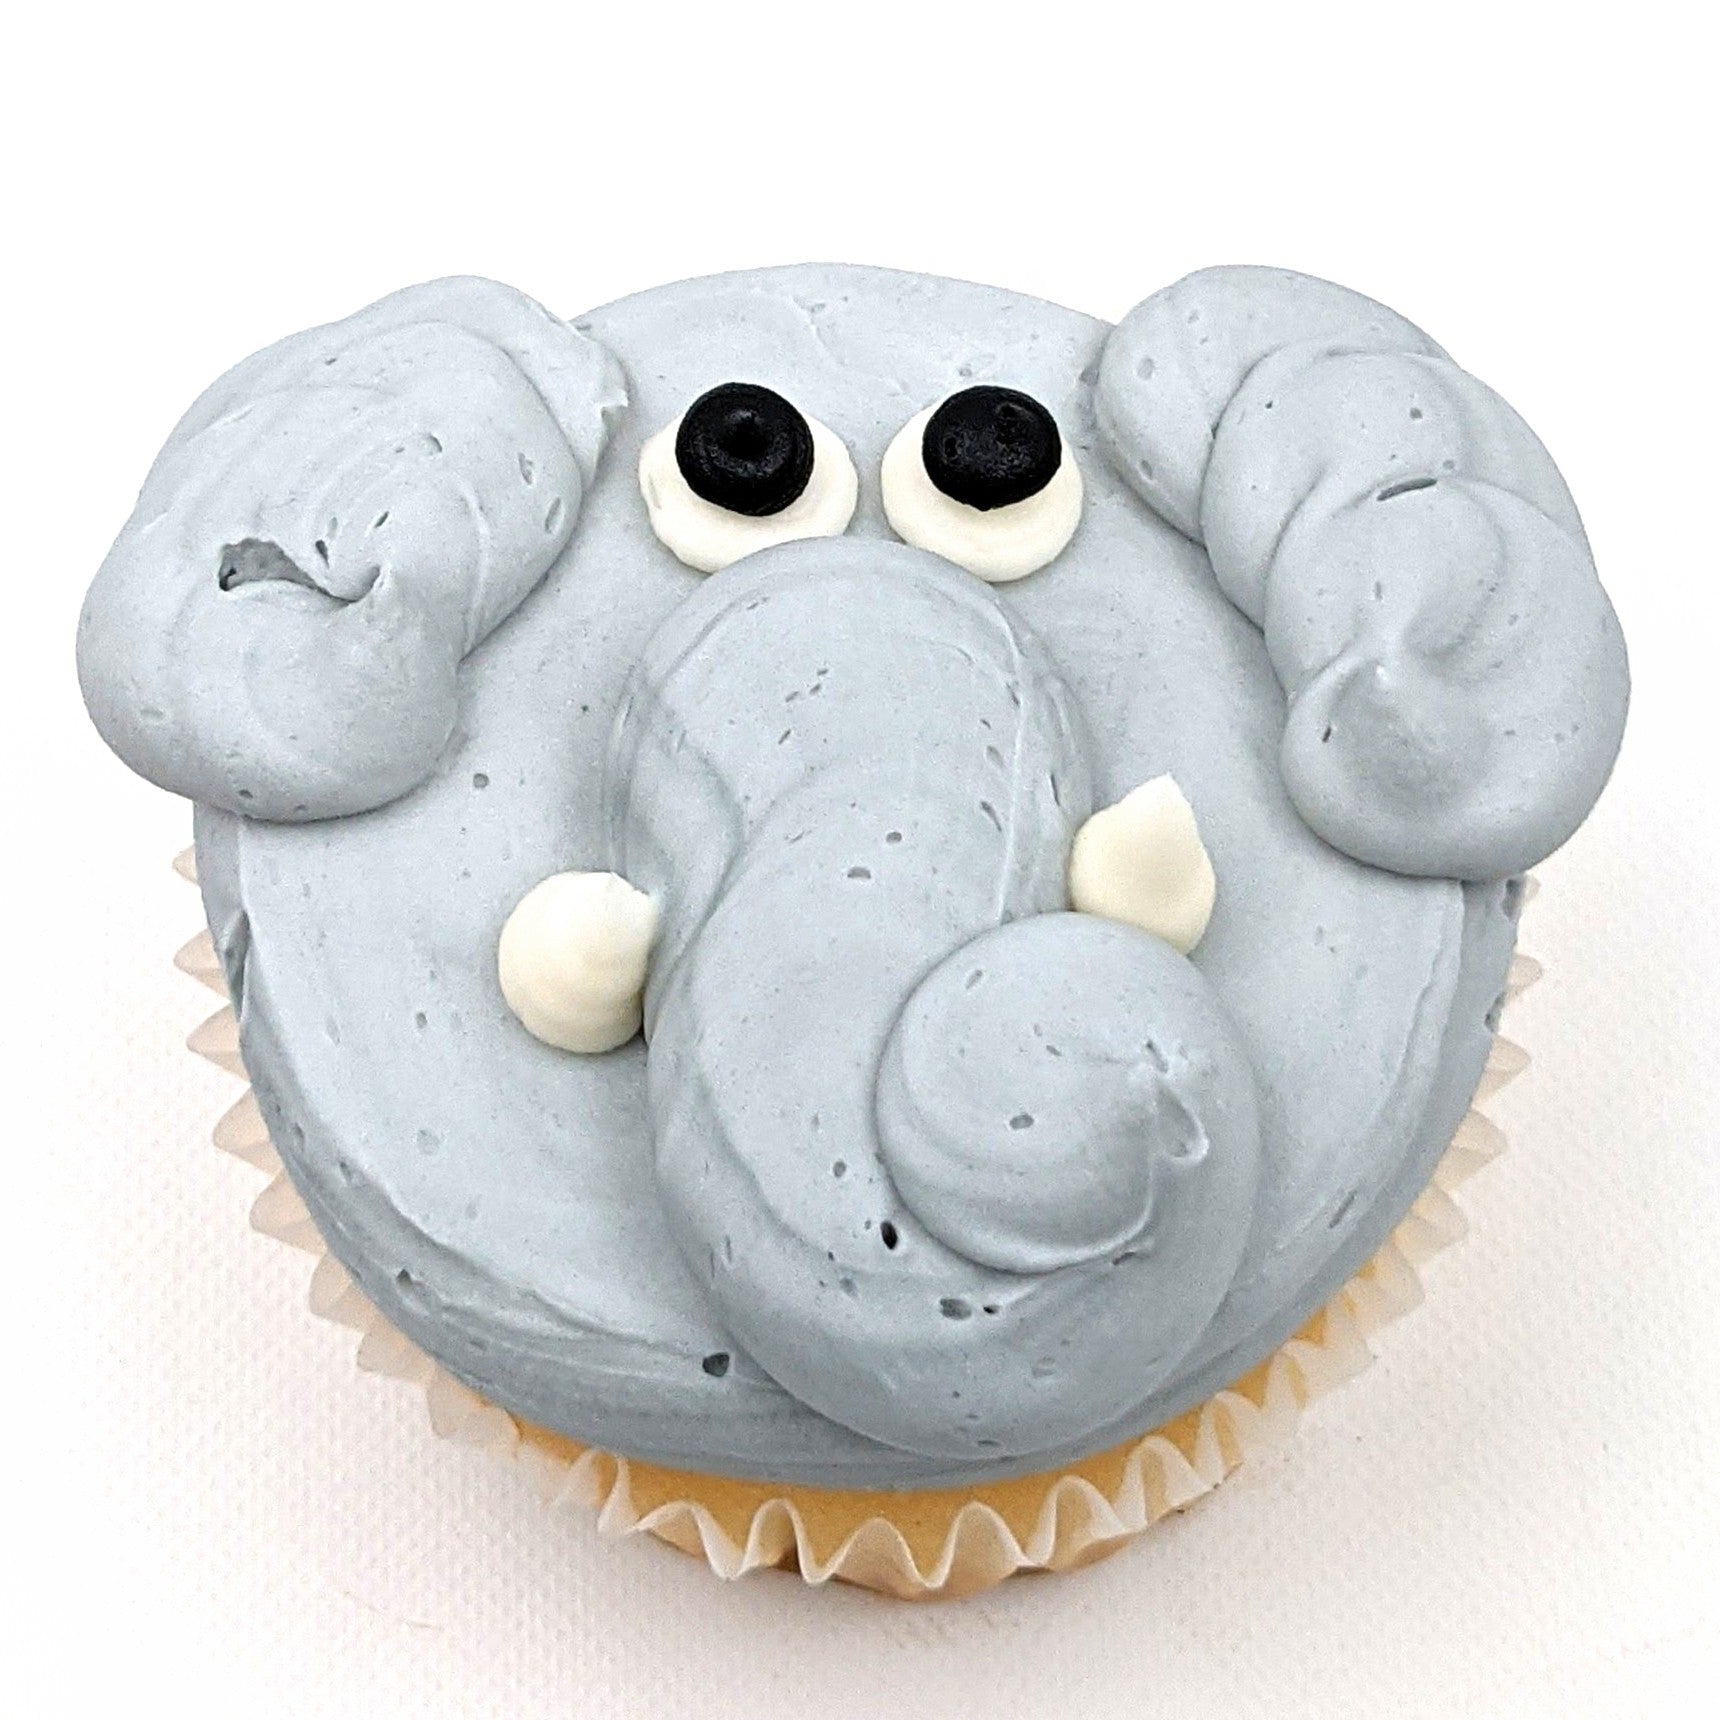 Elephant Face Cake | Elephant Shape Cake Tamil #cakeideas #cakedecorating  #homemade #cake #elephant - YouTube